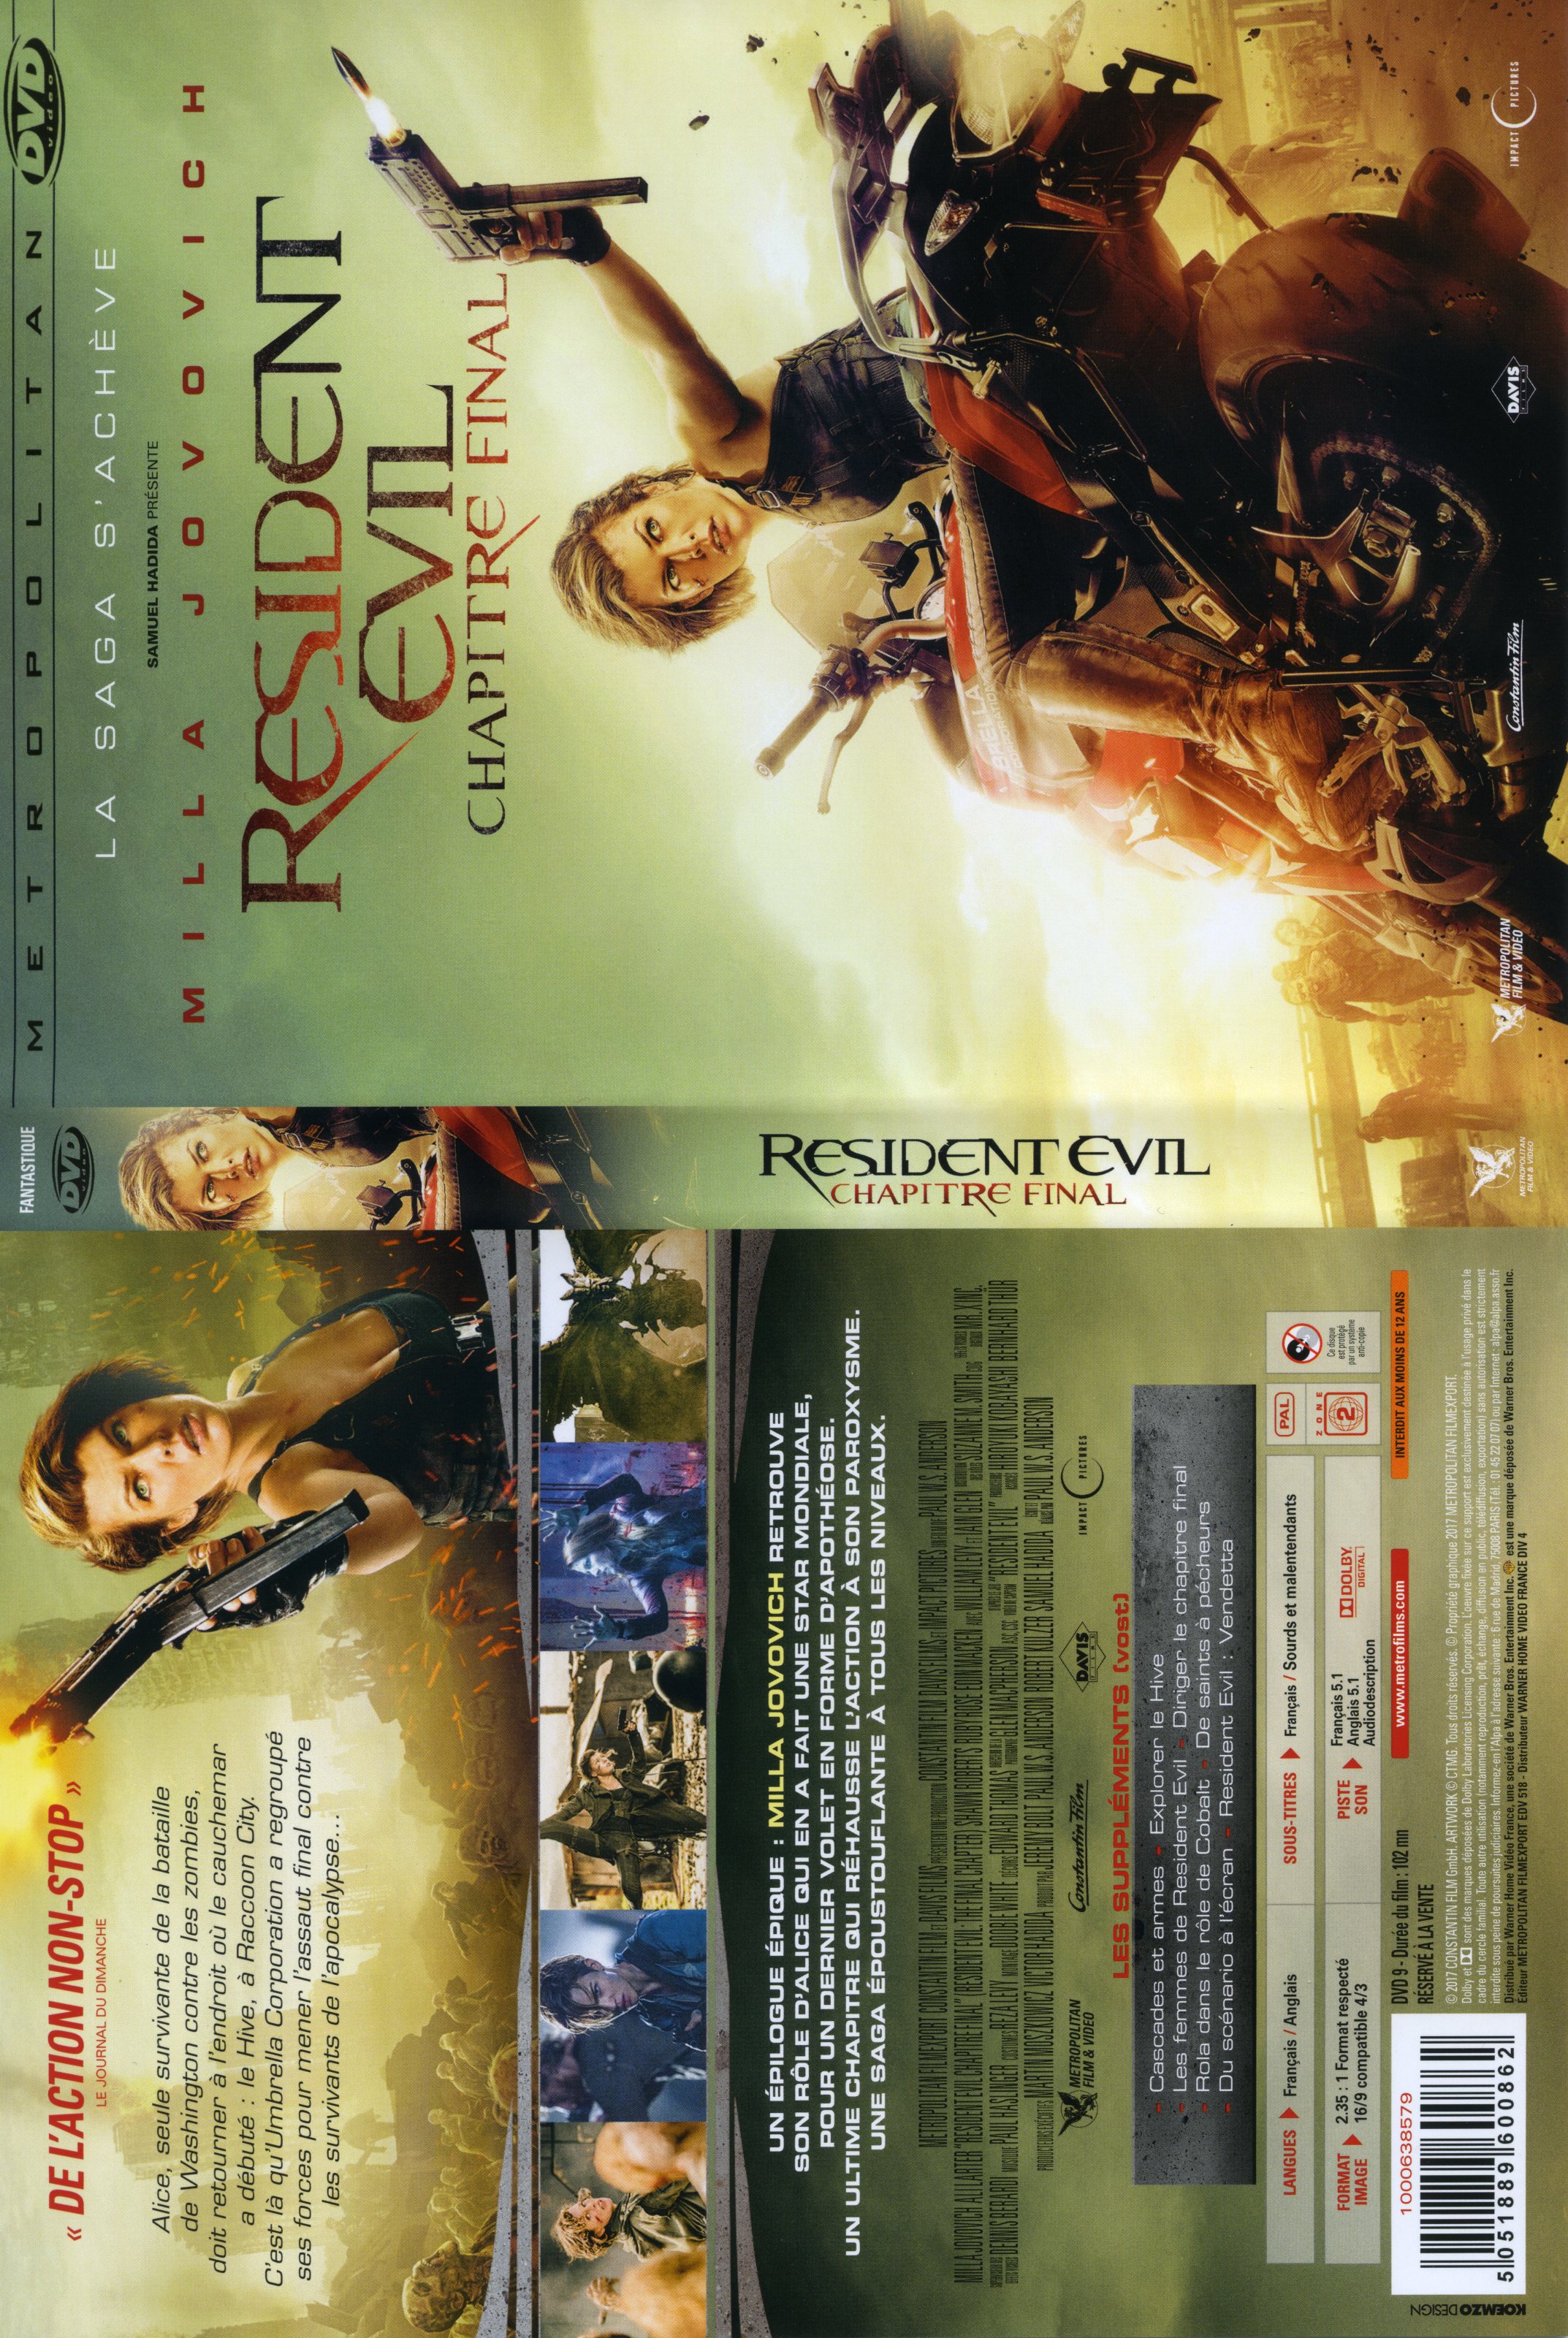 Jaquette DVD Resident Evil : Chapitre Final